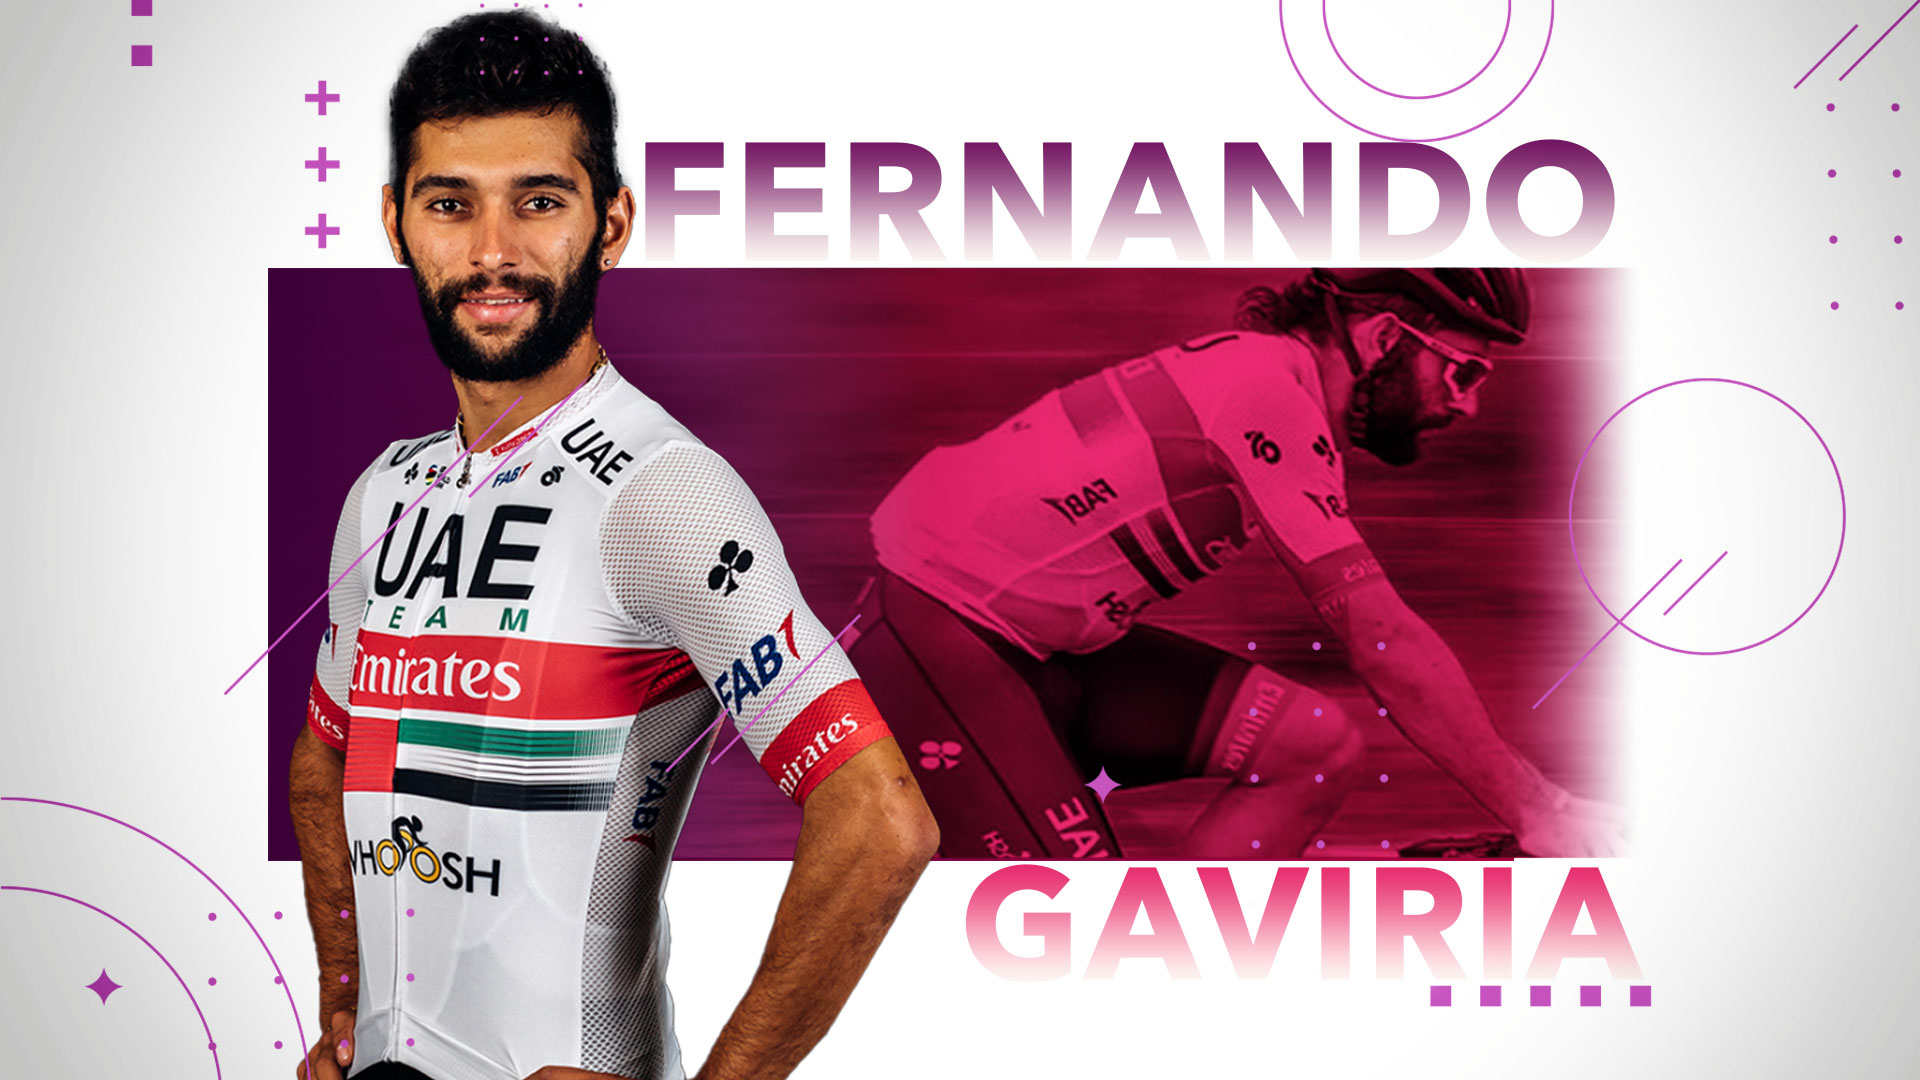 Giro Italia: Fernando Gaviria, el rey de la velocidad buscará el podio en Europa - Infobae